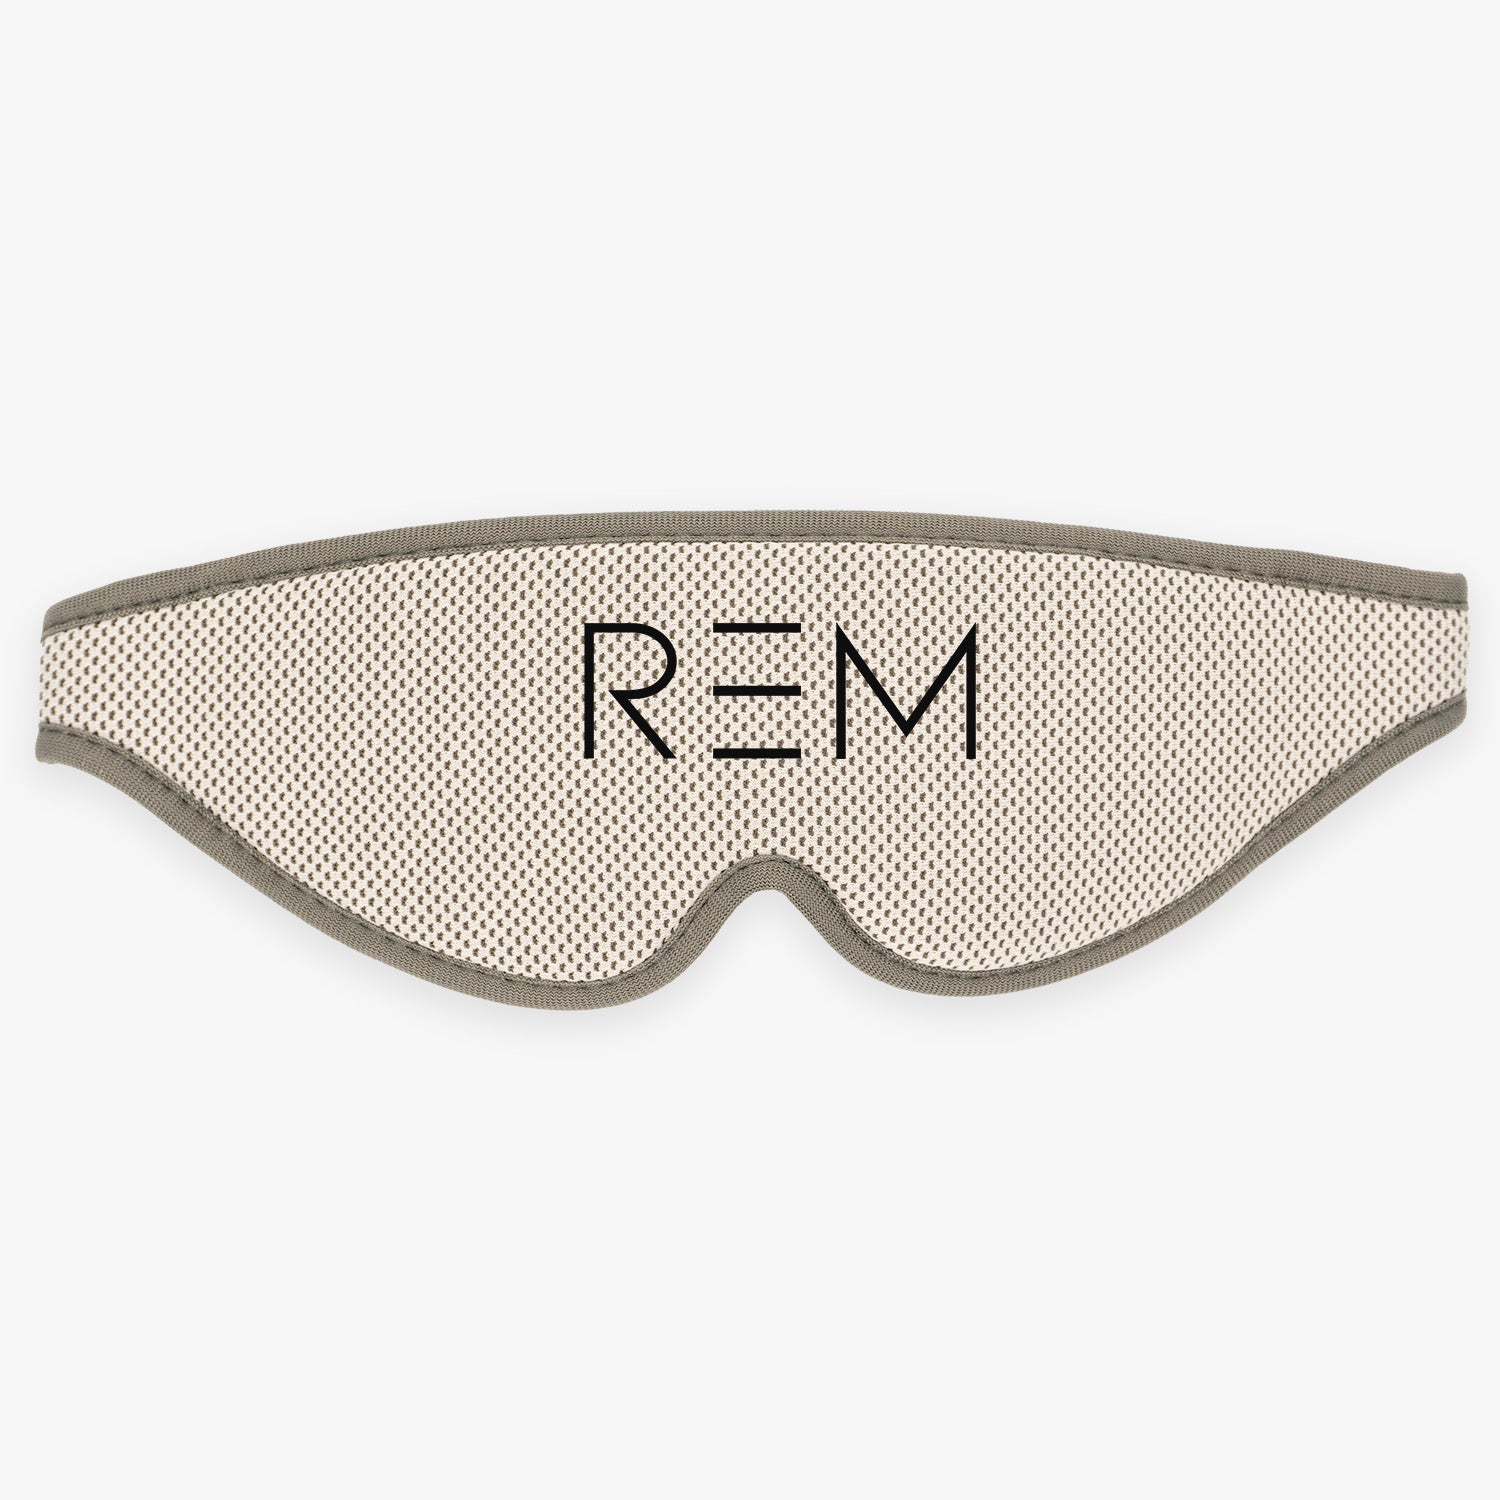 REM Sleep Mask - Offer